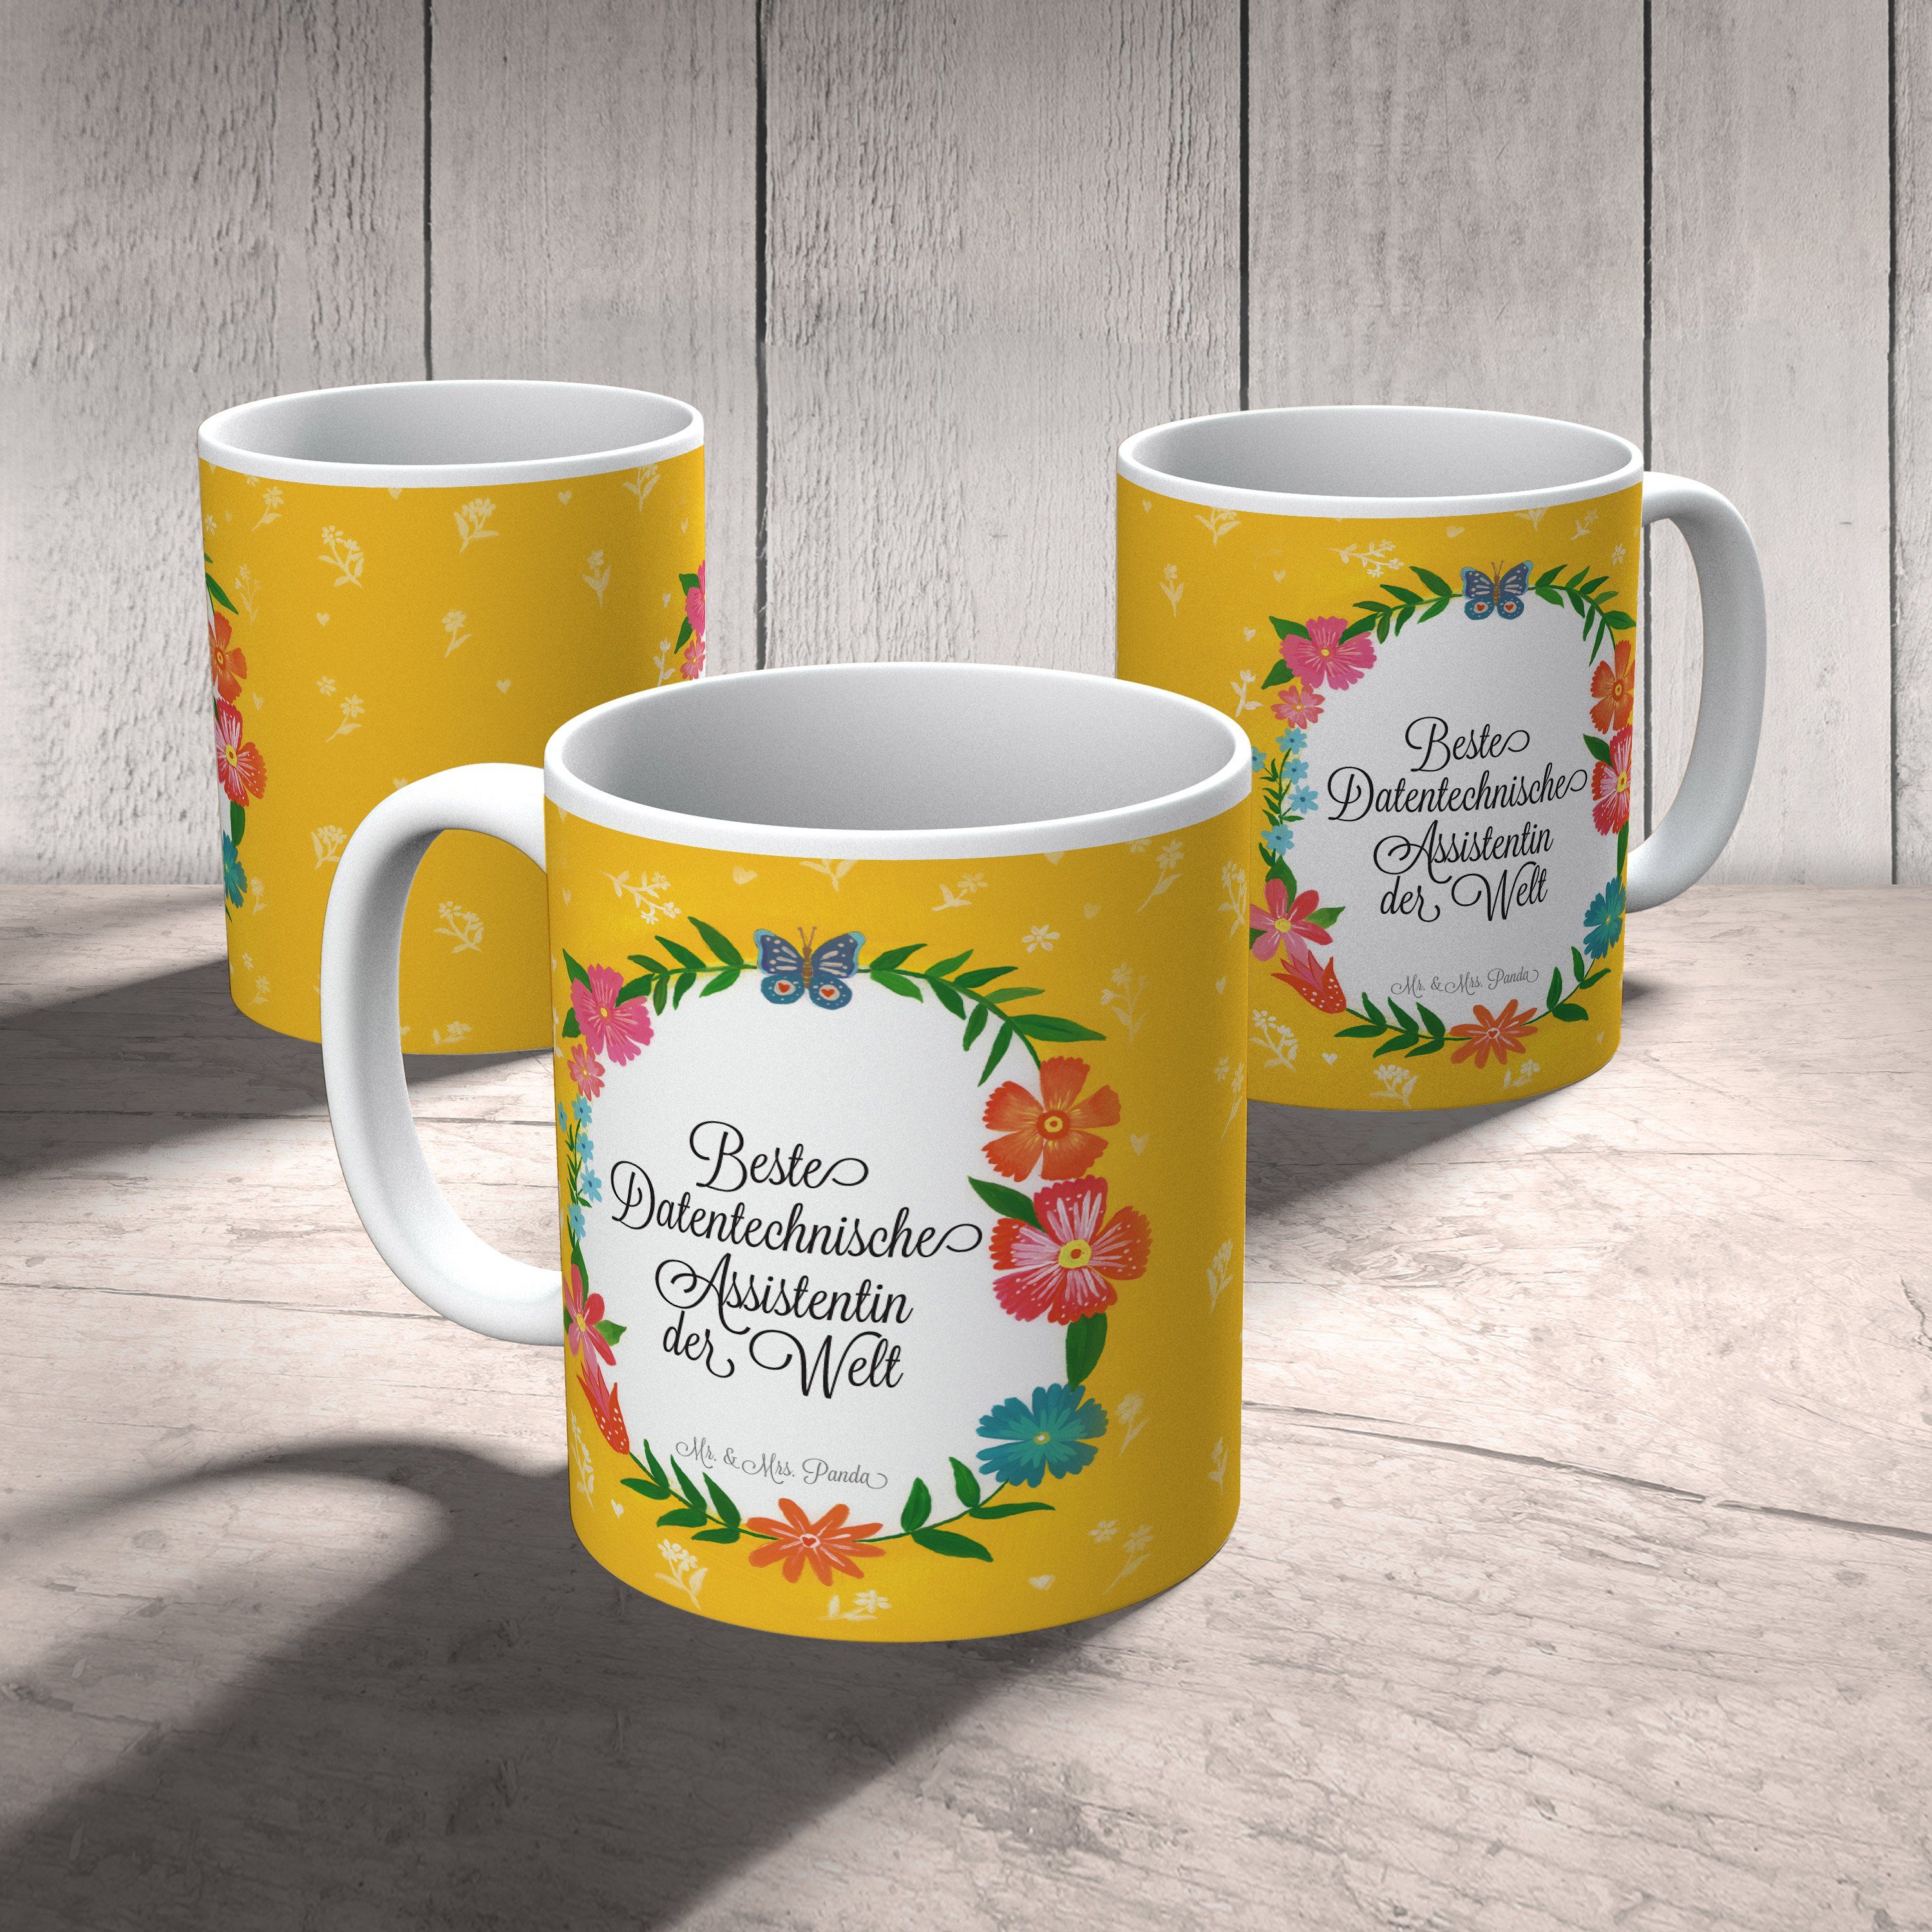 Geschenk, Tasse & Panda Porze, - Assistentin Abschluss, Datentechnische Mrs. Mr. Keramik Kaffeetasse,